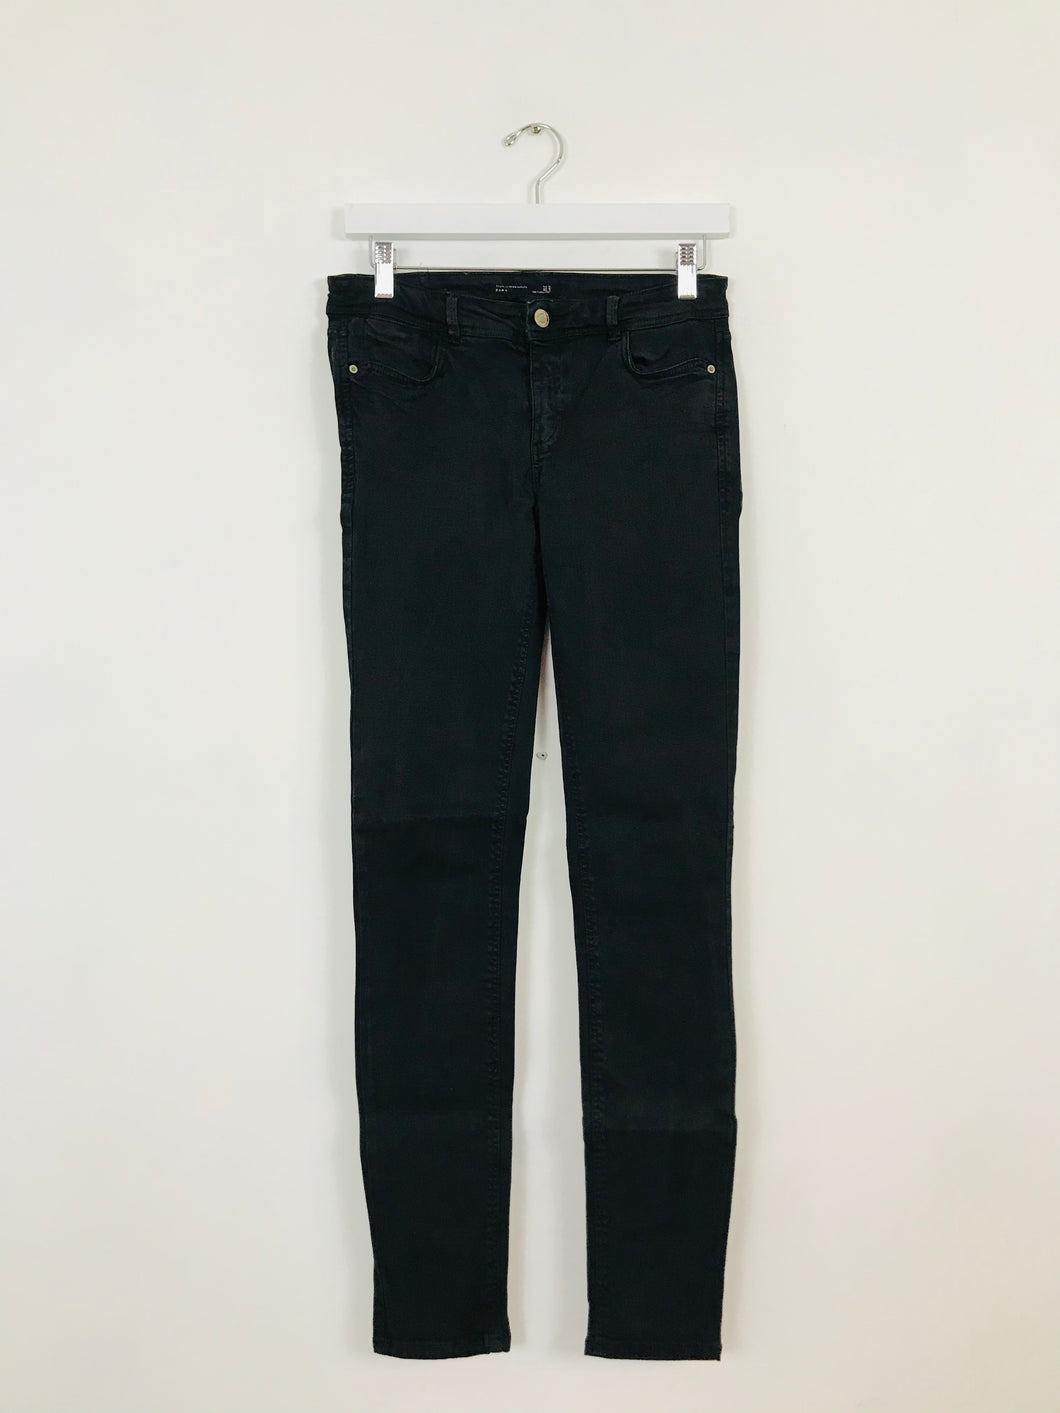 Zara Women’s Skinny Jeans | 36 UK8 | Black